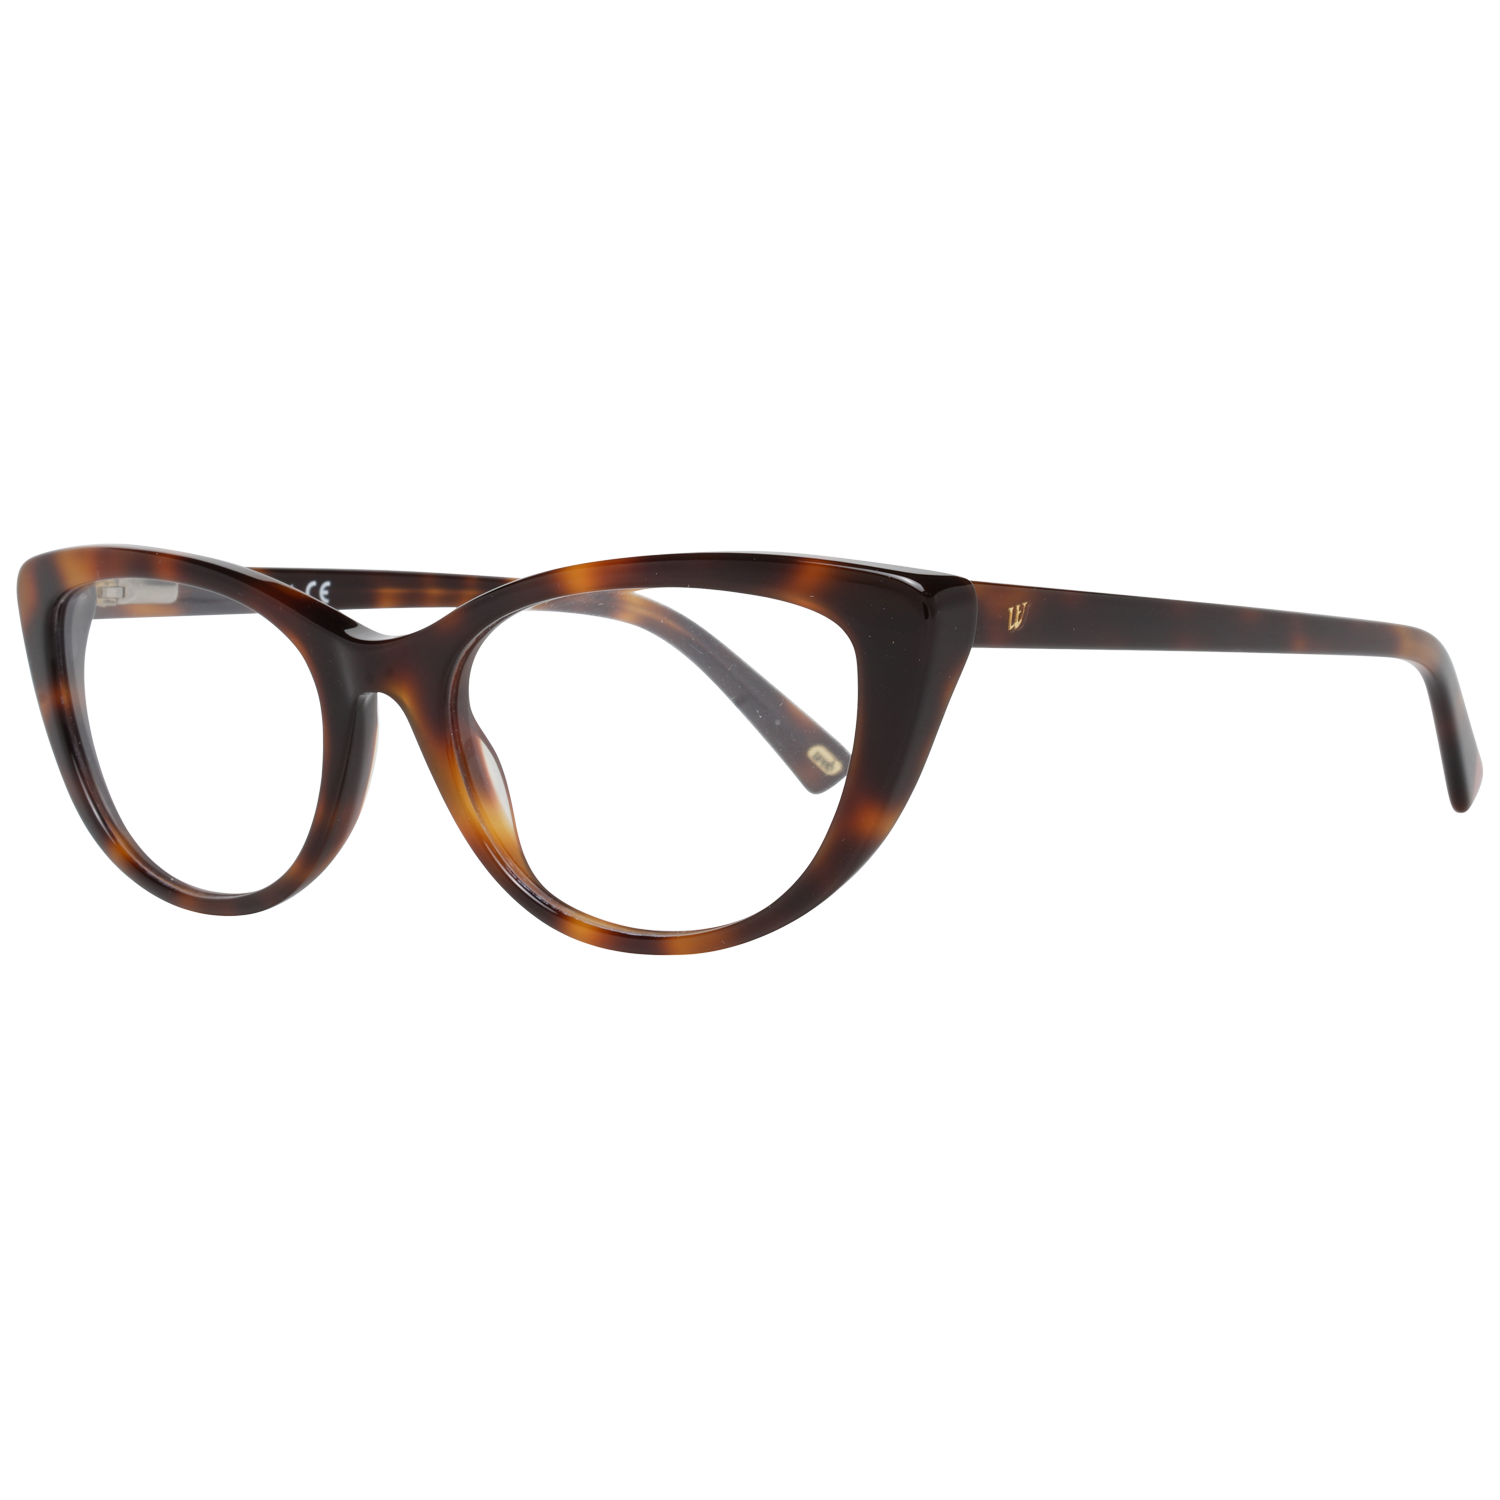 Web Frames Web Optical Frame WE5252 052 52 Eyeglasses Eyewear UK USA Australia 